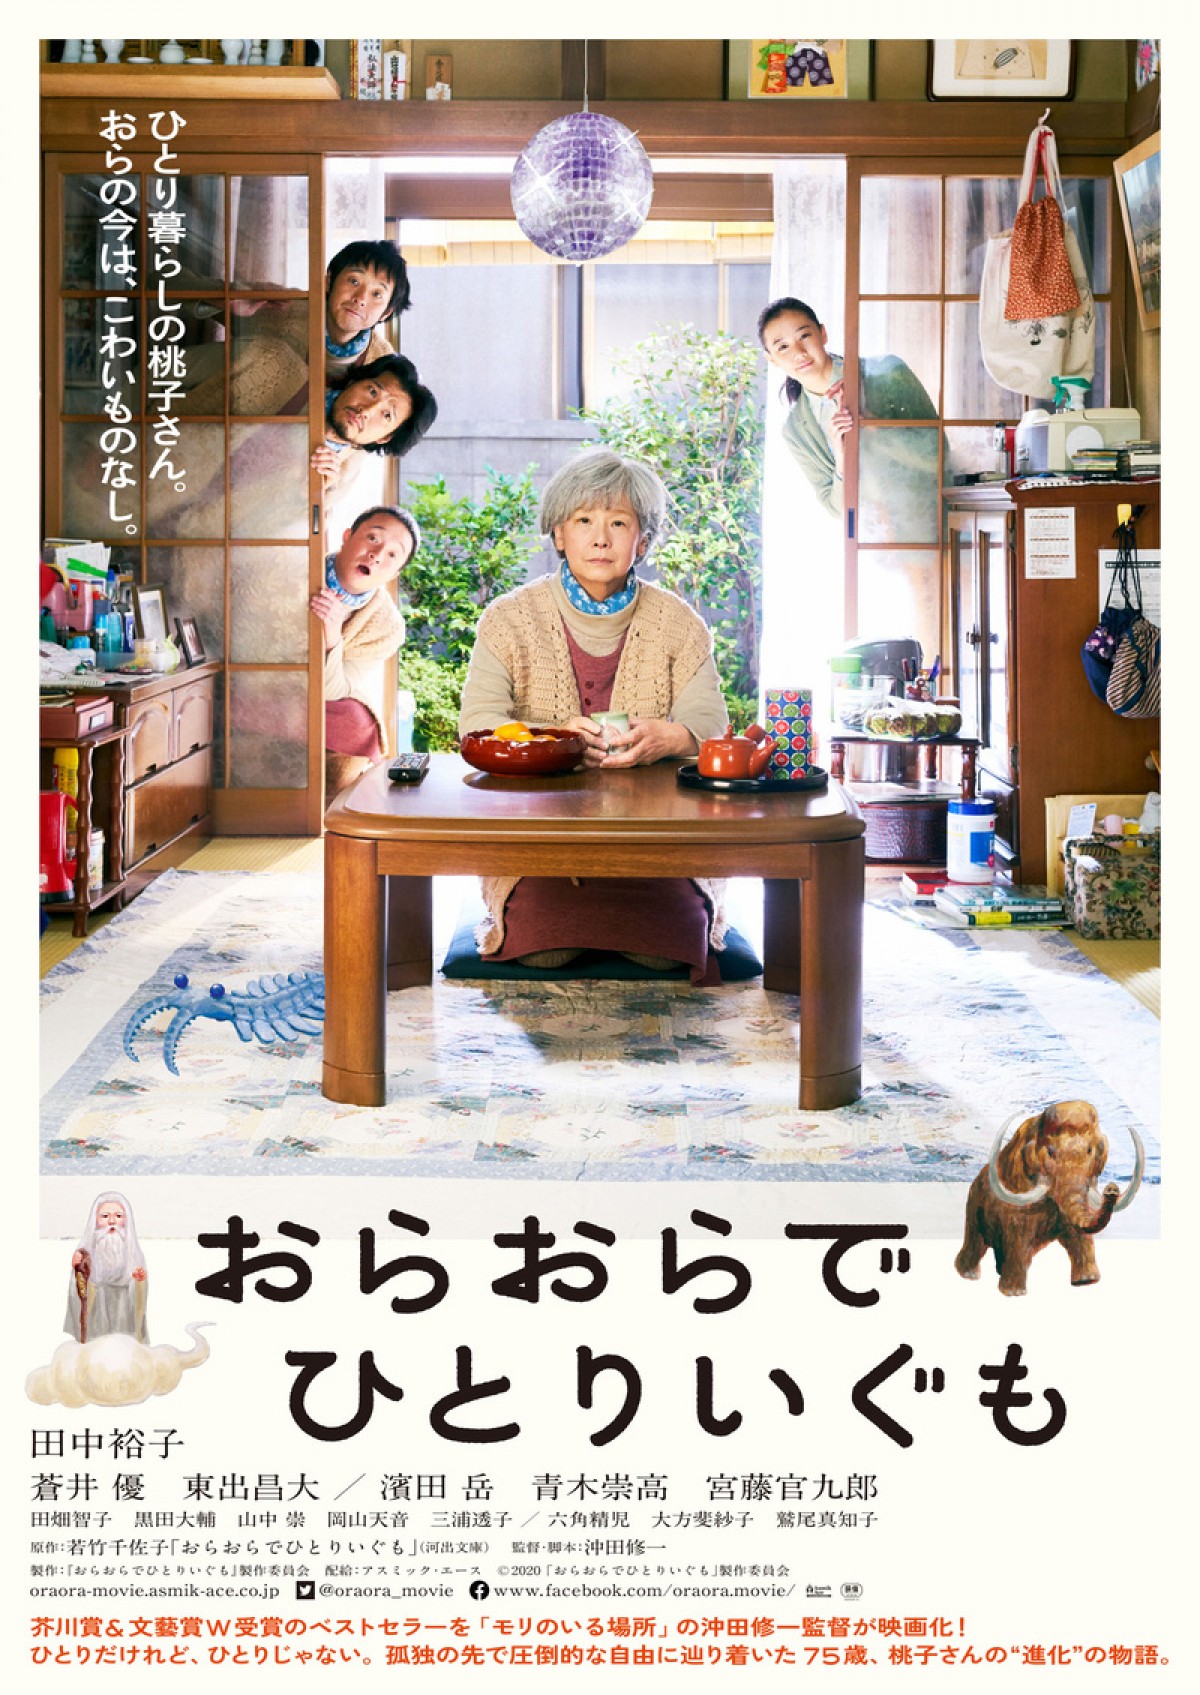 田中裕子15年ぶり主演映画『おらおらでひとりいぐも』、主題歌はハナレグミ